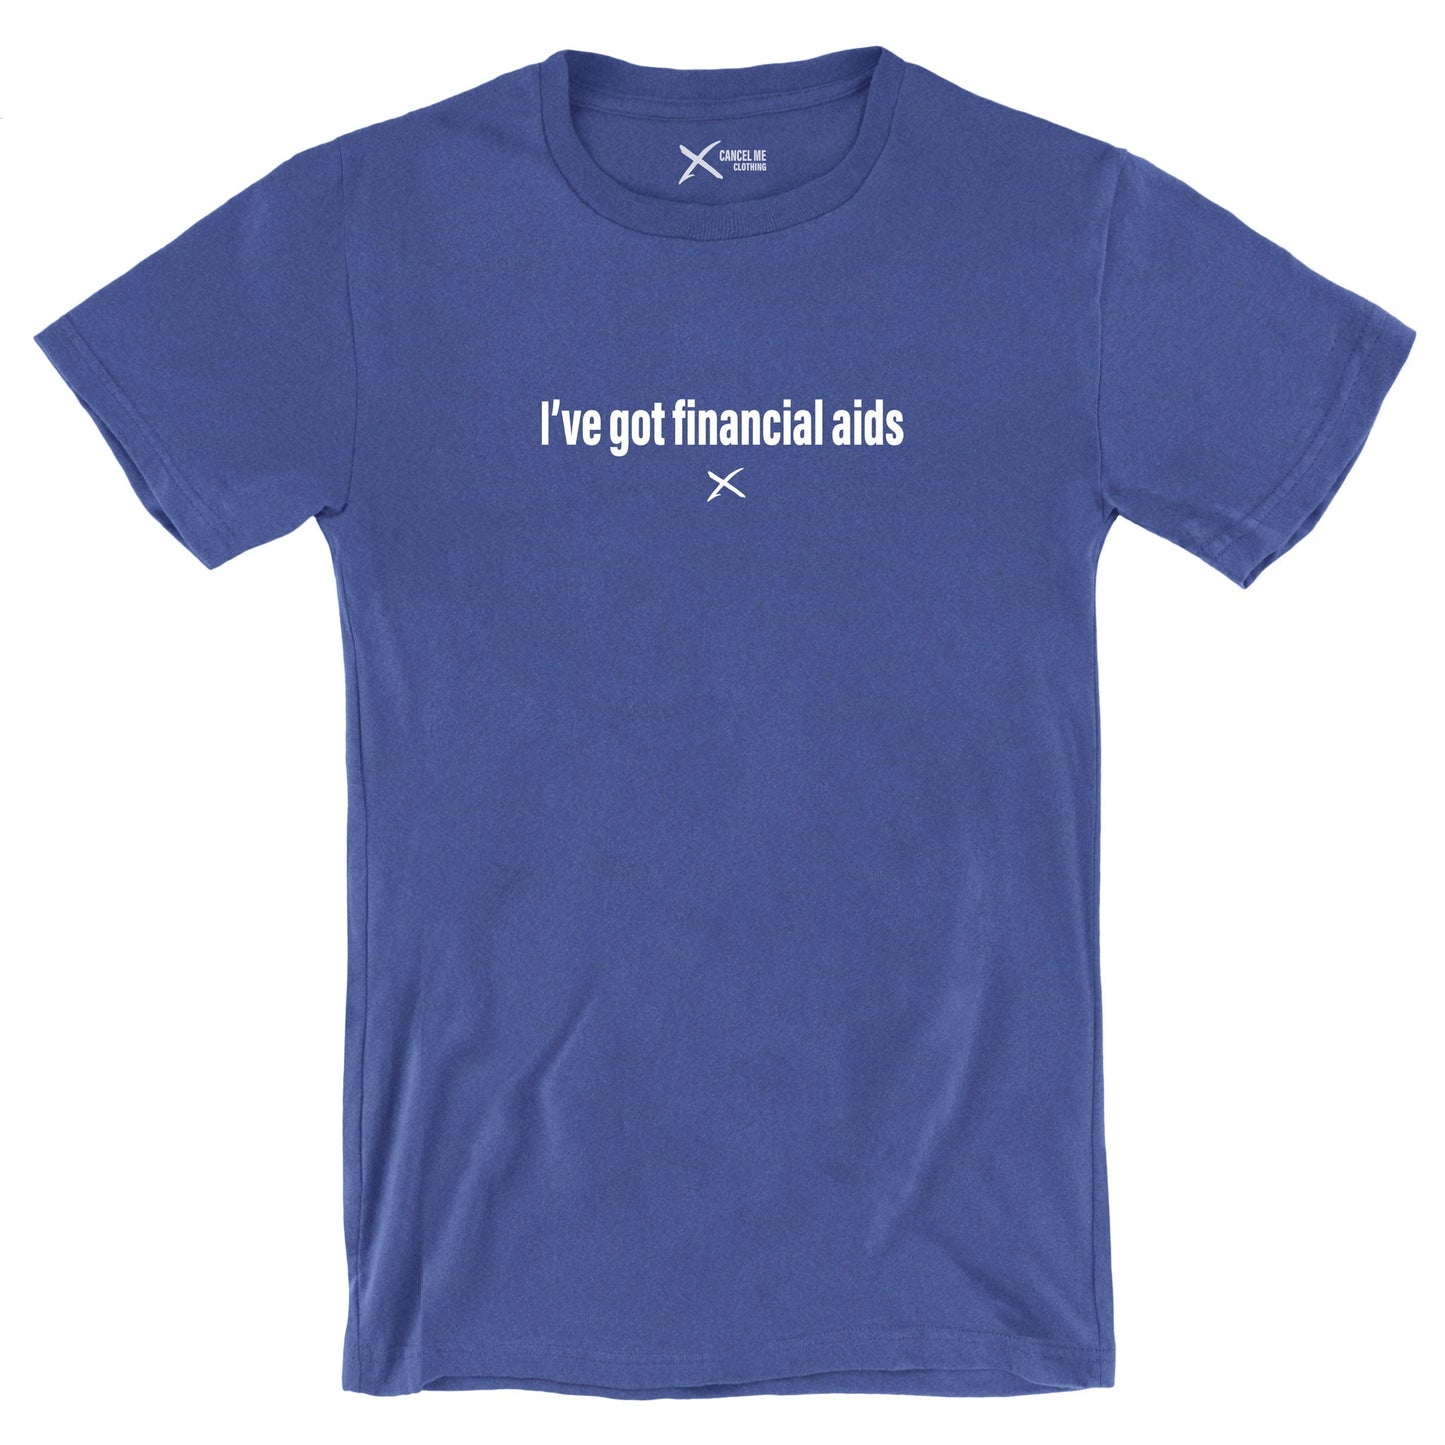 I've got financial aids - Shirt